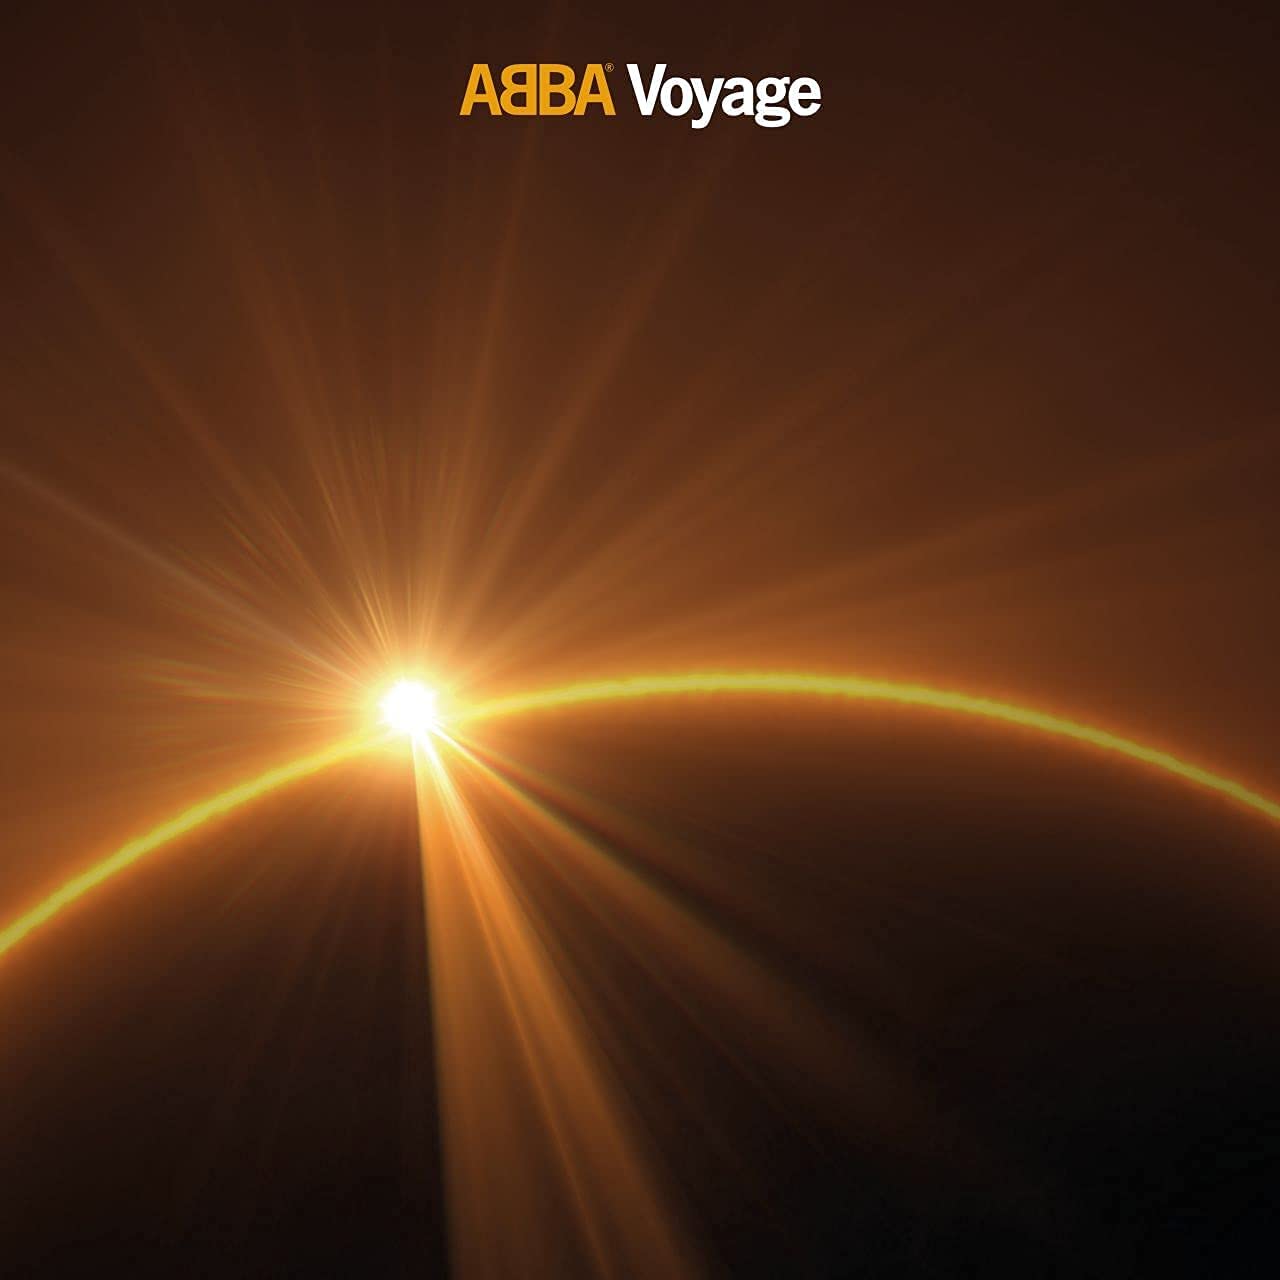 Copertina Vinile 33 giri Voyage di ABBA